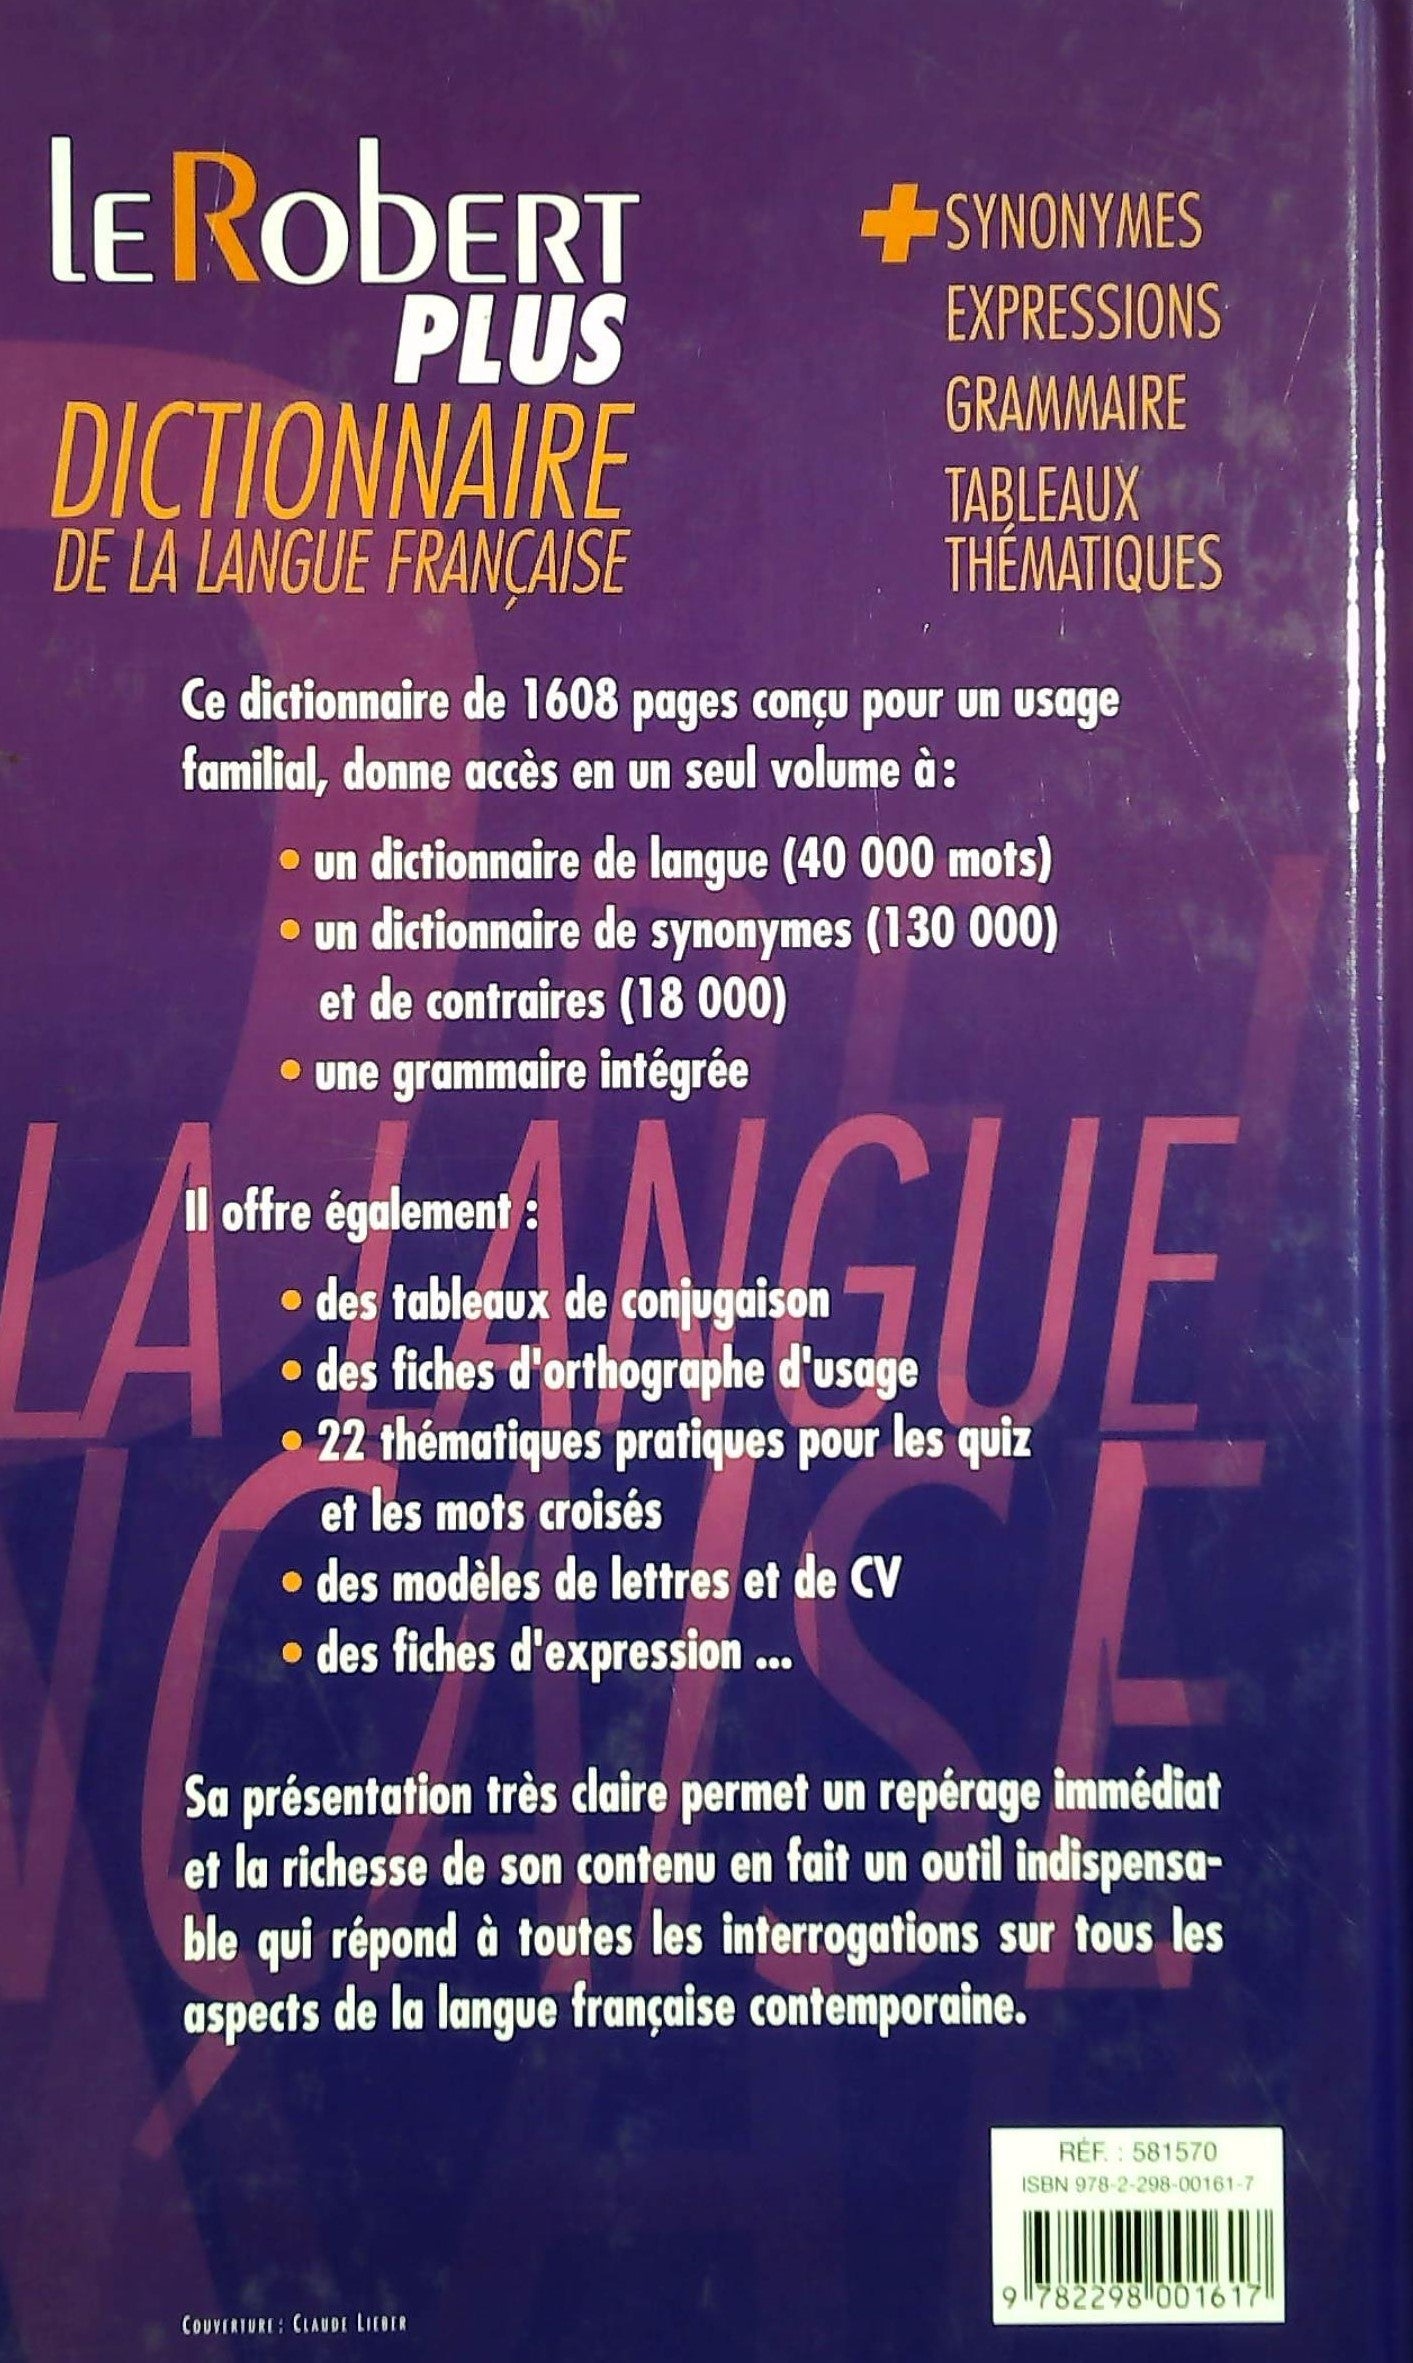 Le robert plus, dictionnaire de la langue française + synonymes, expressions, grammaire, tableaux mathématiques